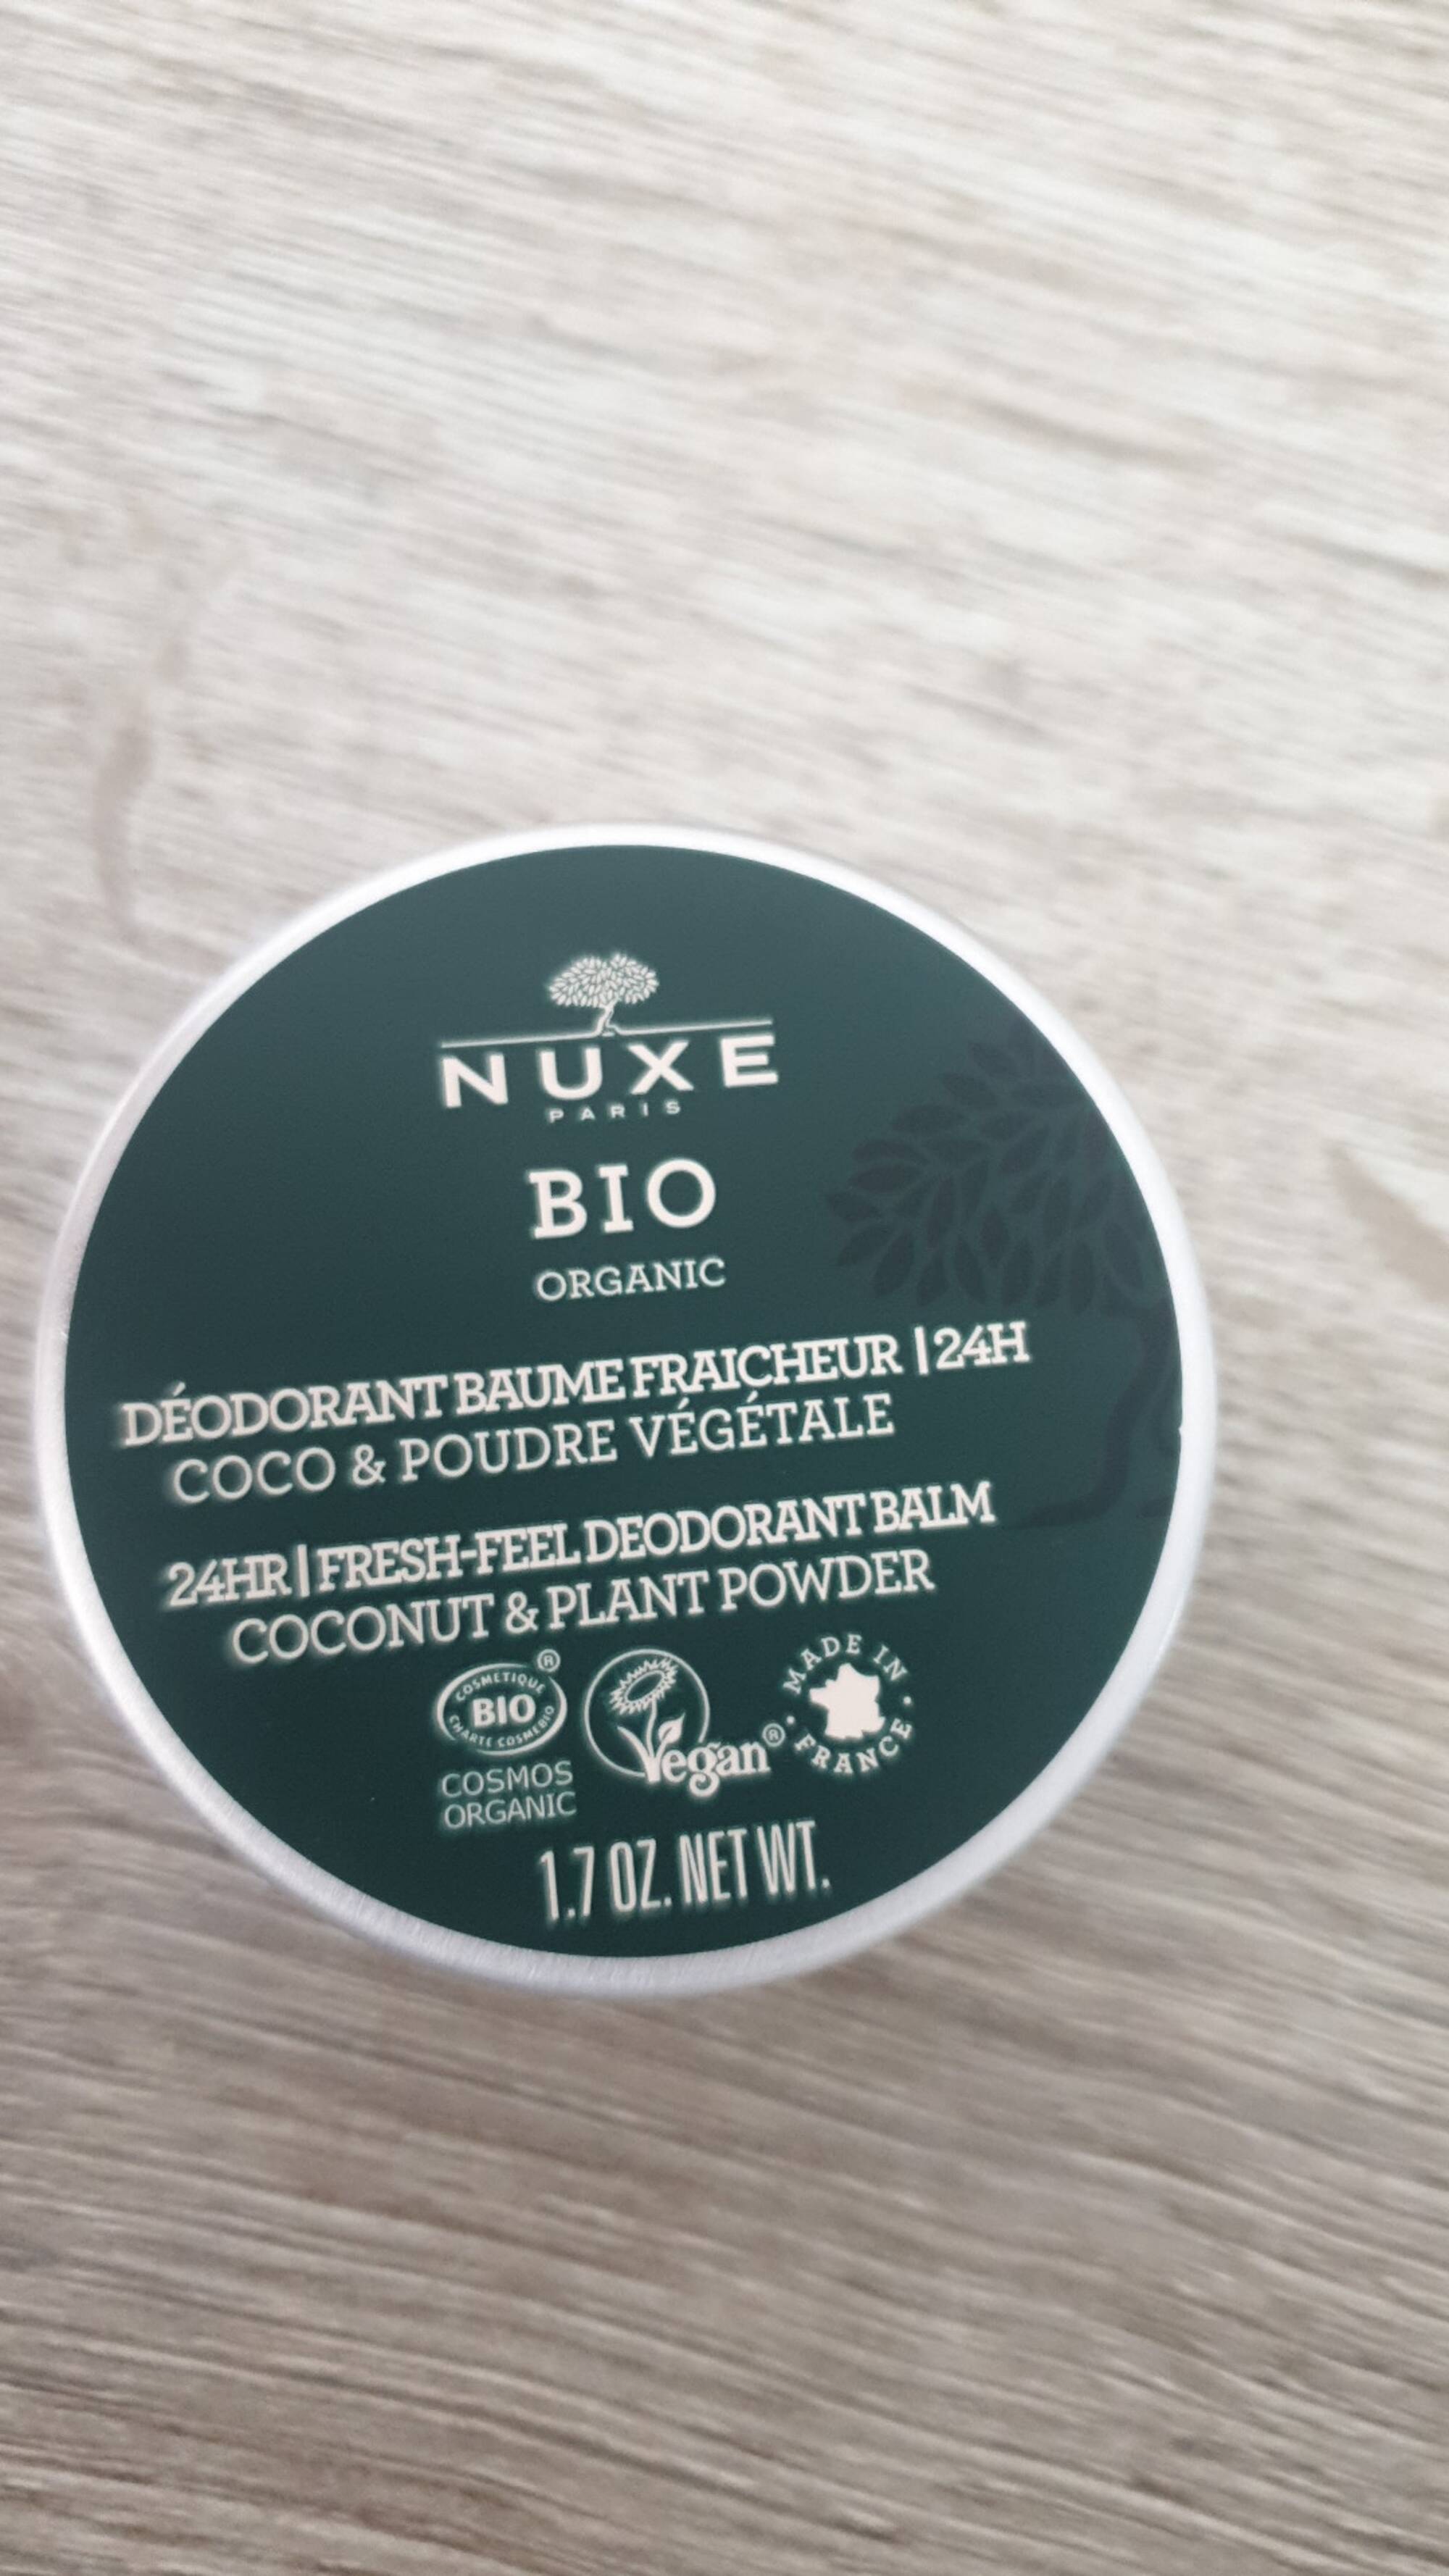 NUXE - Coco & Poudre végétale - Déodorant baume fraicheur 24h